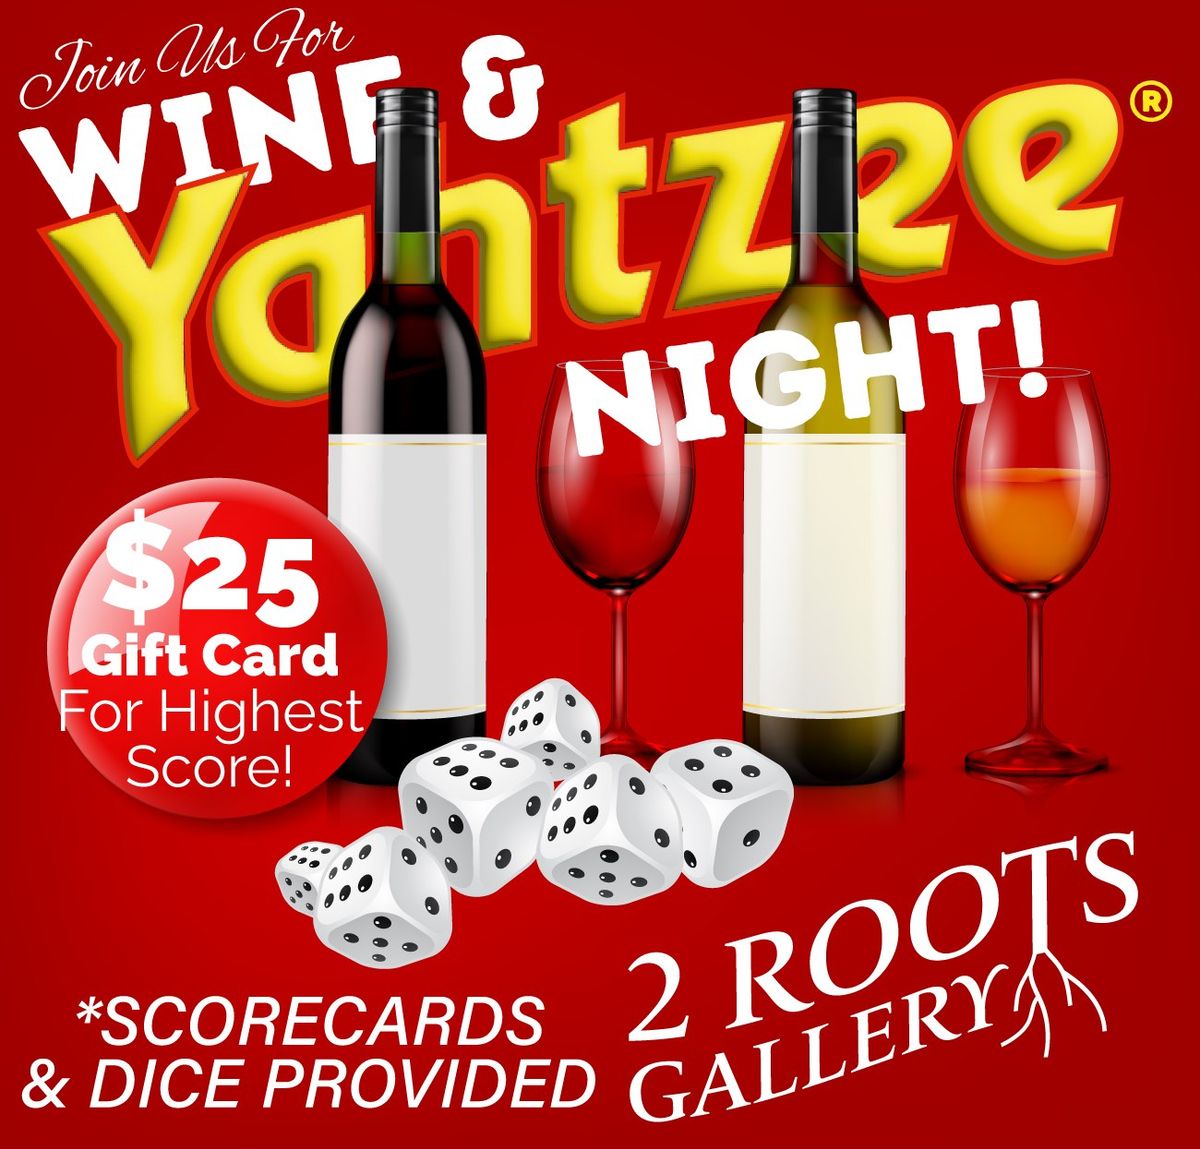 Yahtzee & Wine Night